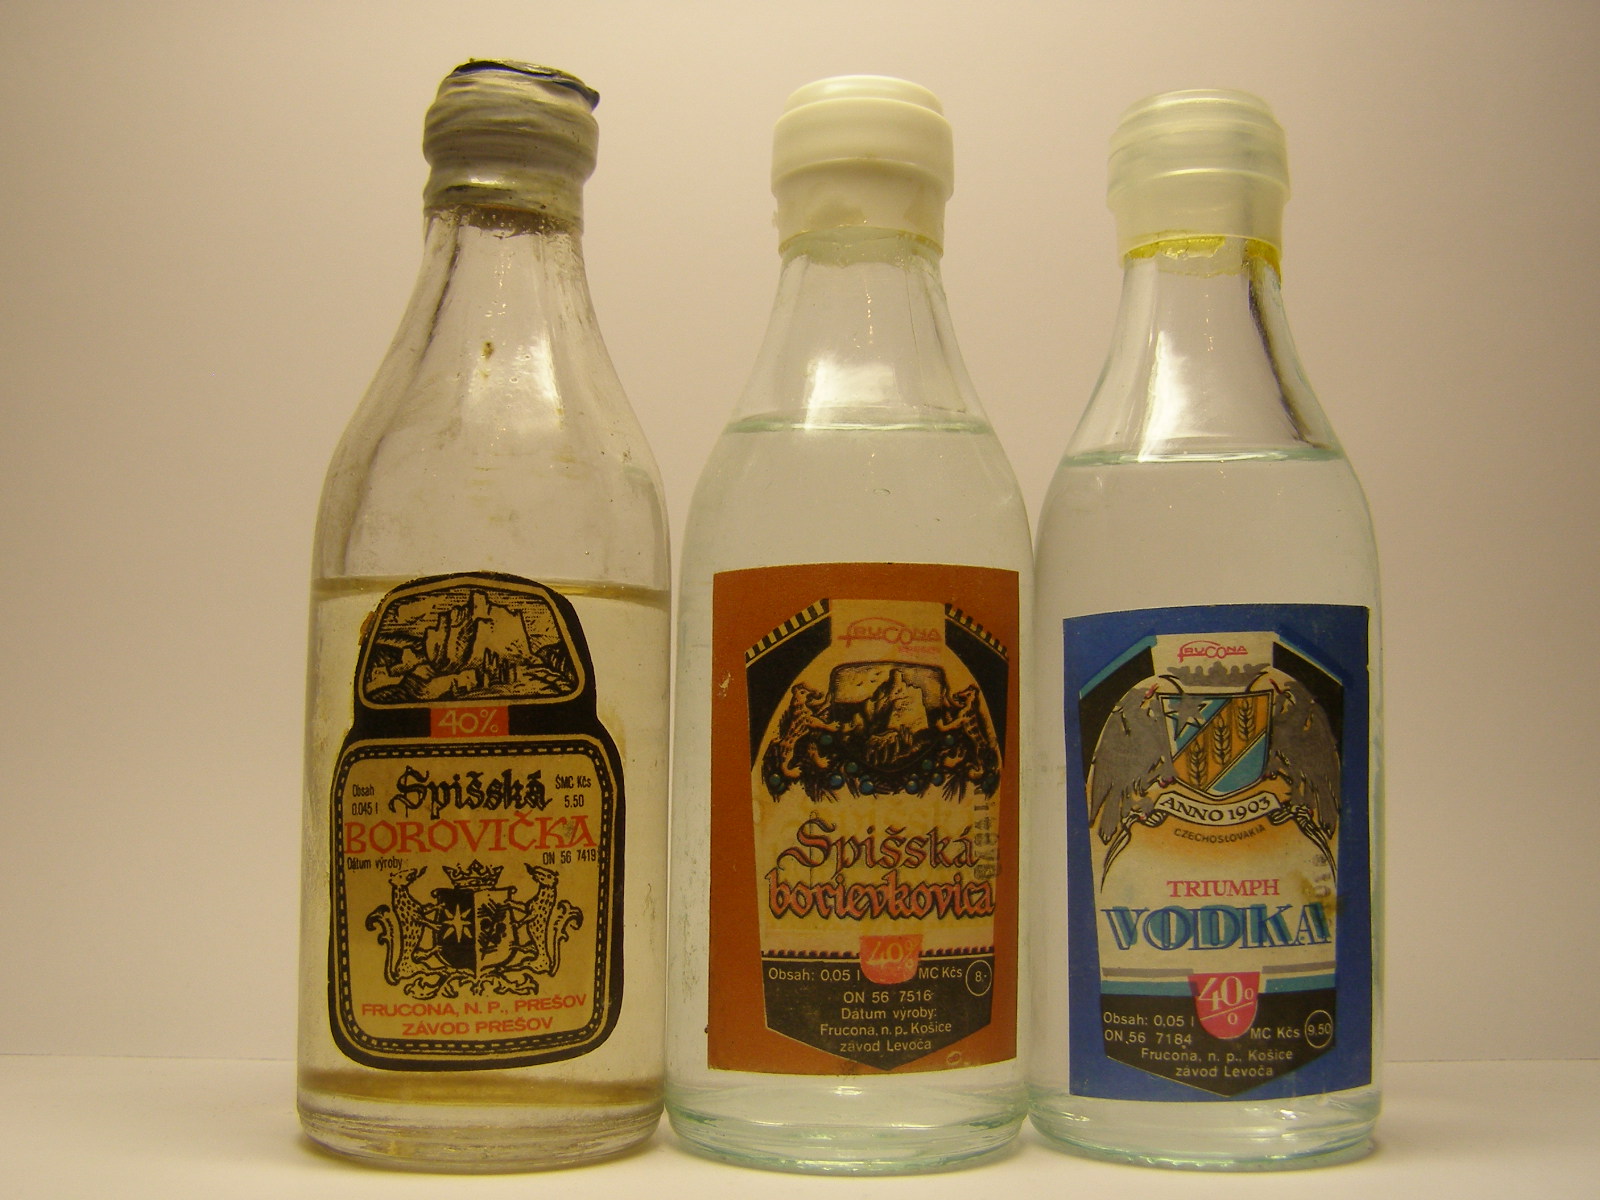 FRUCONA Spišská Borovička - Spišská Borievkovica - Vodka